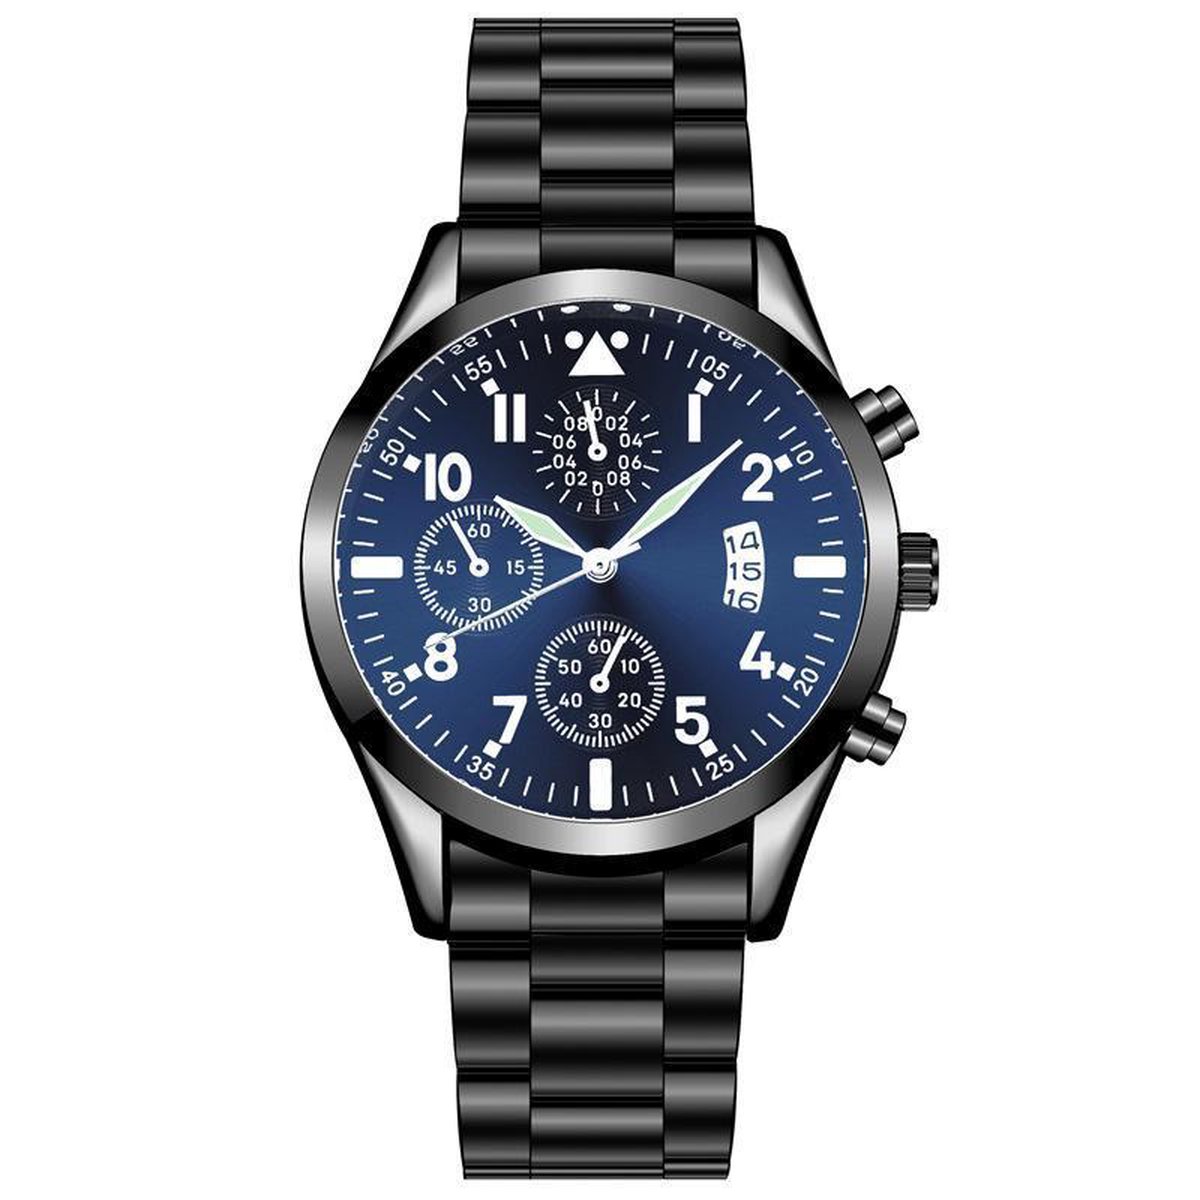 Quartz Heren Horloge Zwart/Blauw • Luxe • Goud • Zwart • Blauw • Heren • Horloge • Quartz • Zakelijk • Stijlvol